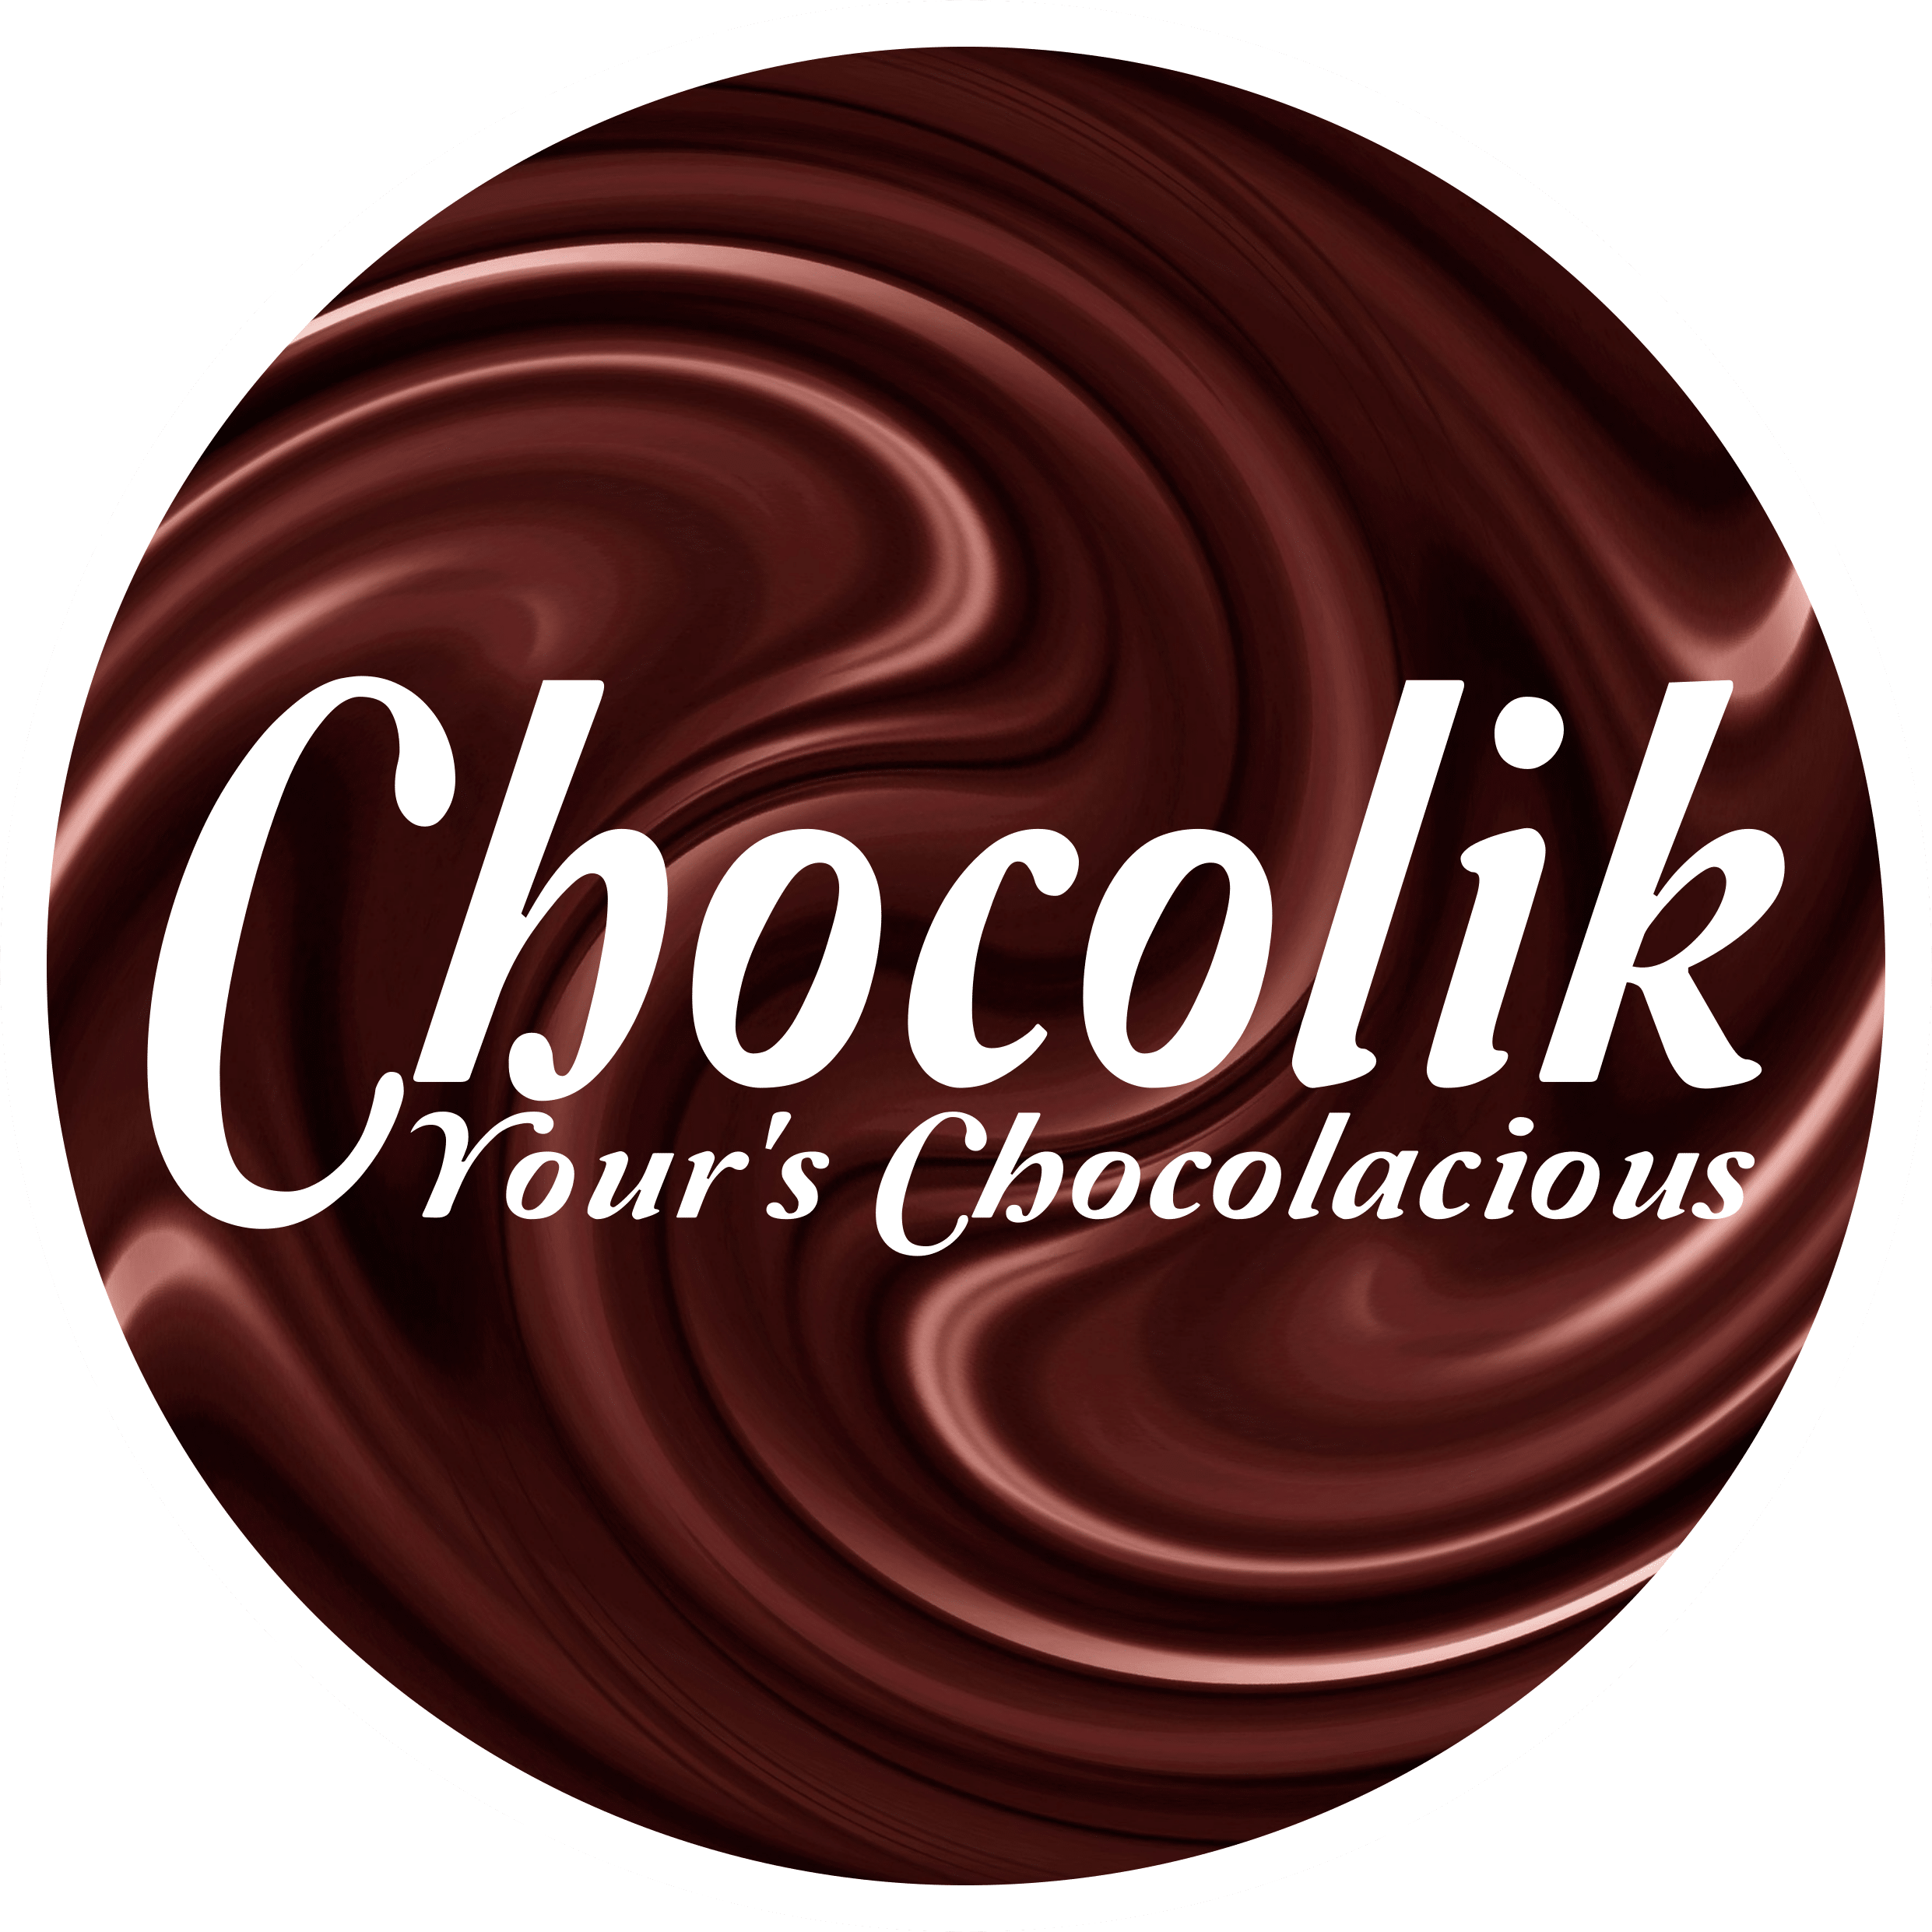 Chocolik